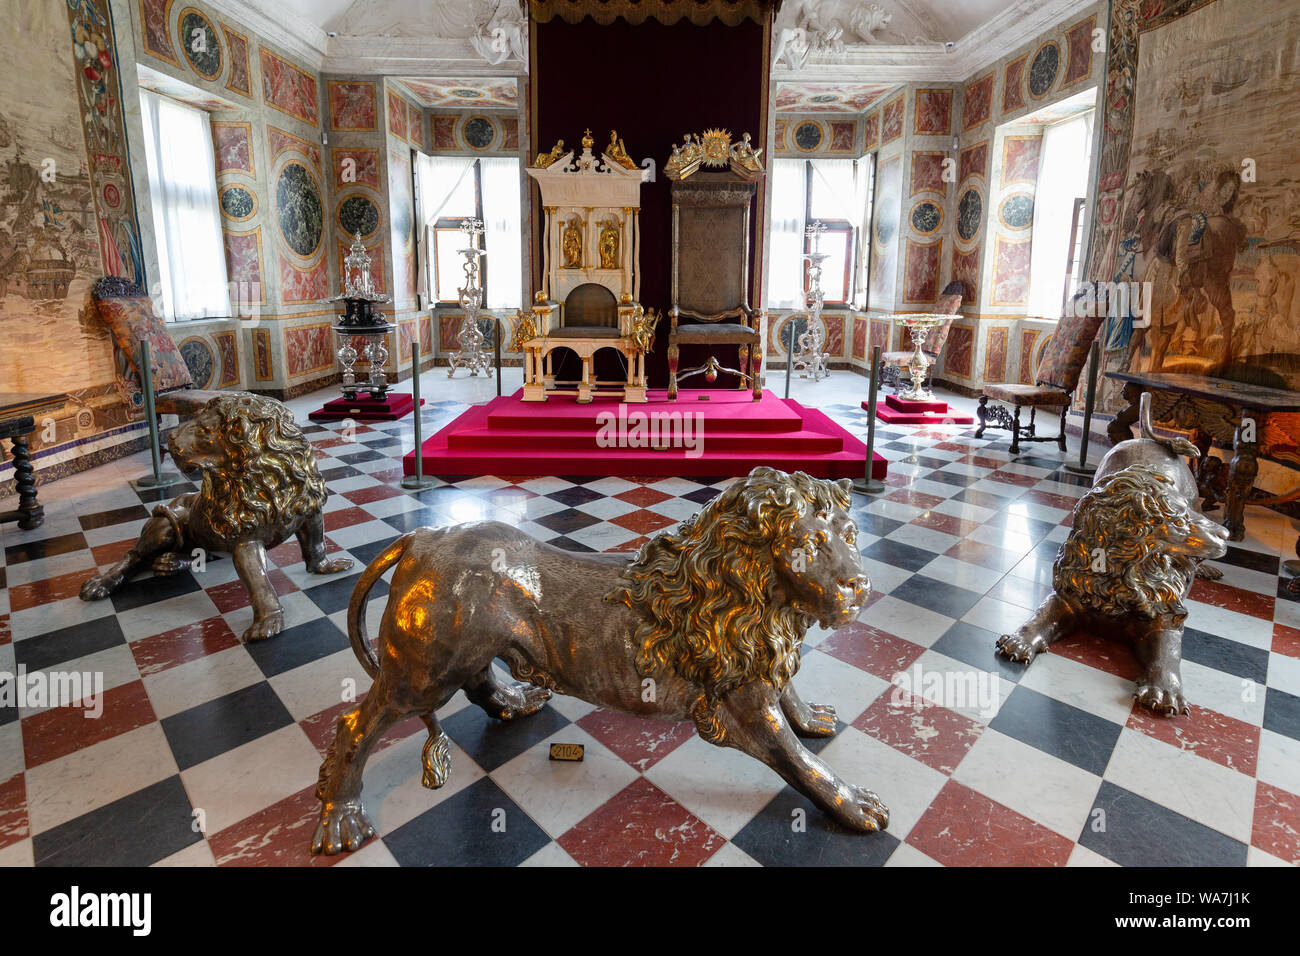 La salle principale ou Grande Salle, avec les lions d'argent et des trônes ; château de Rosenborg, Danemark Copenhague Scandinavie intérieure Banque D'Images